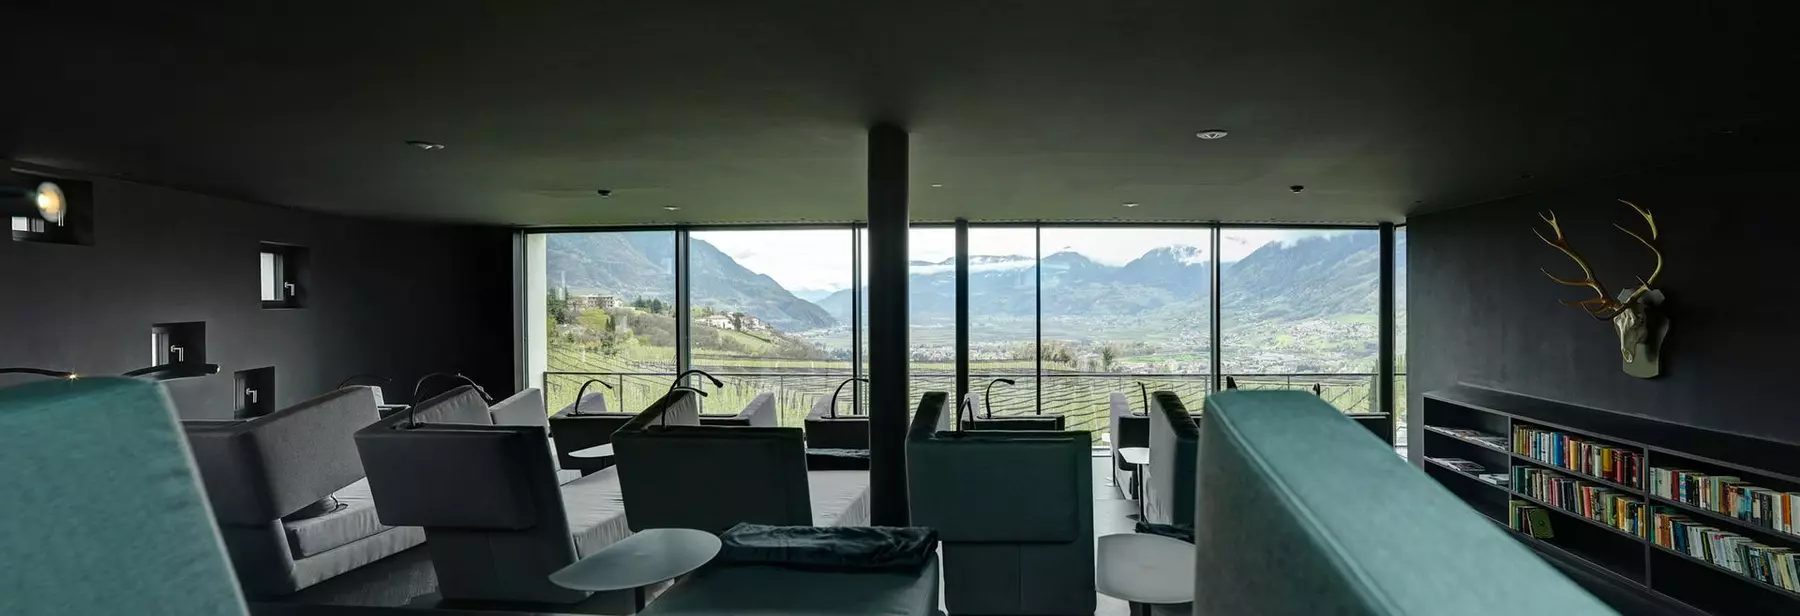 ruheraum-panoramafenster-meranerland